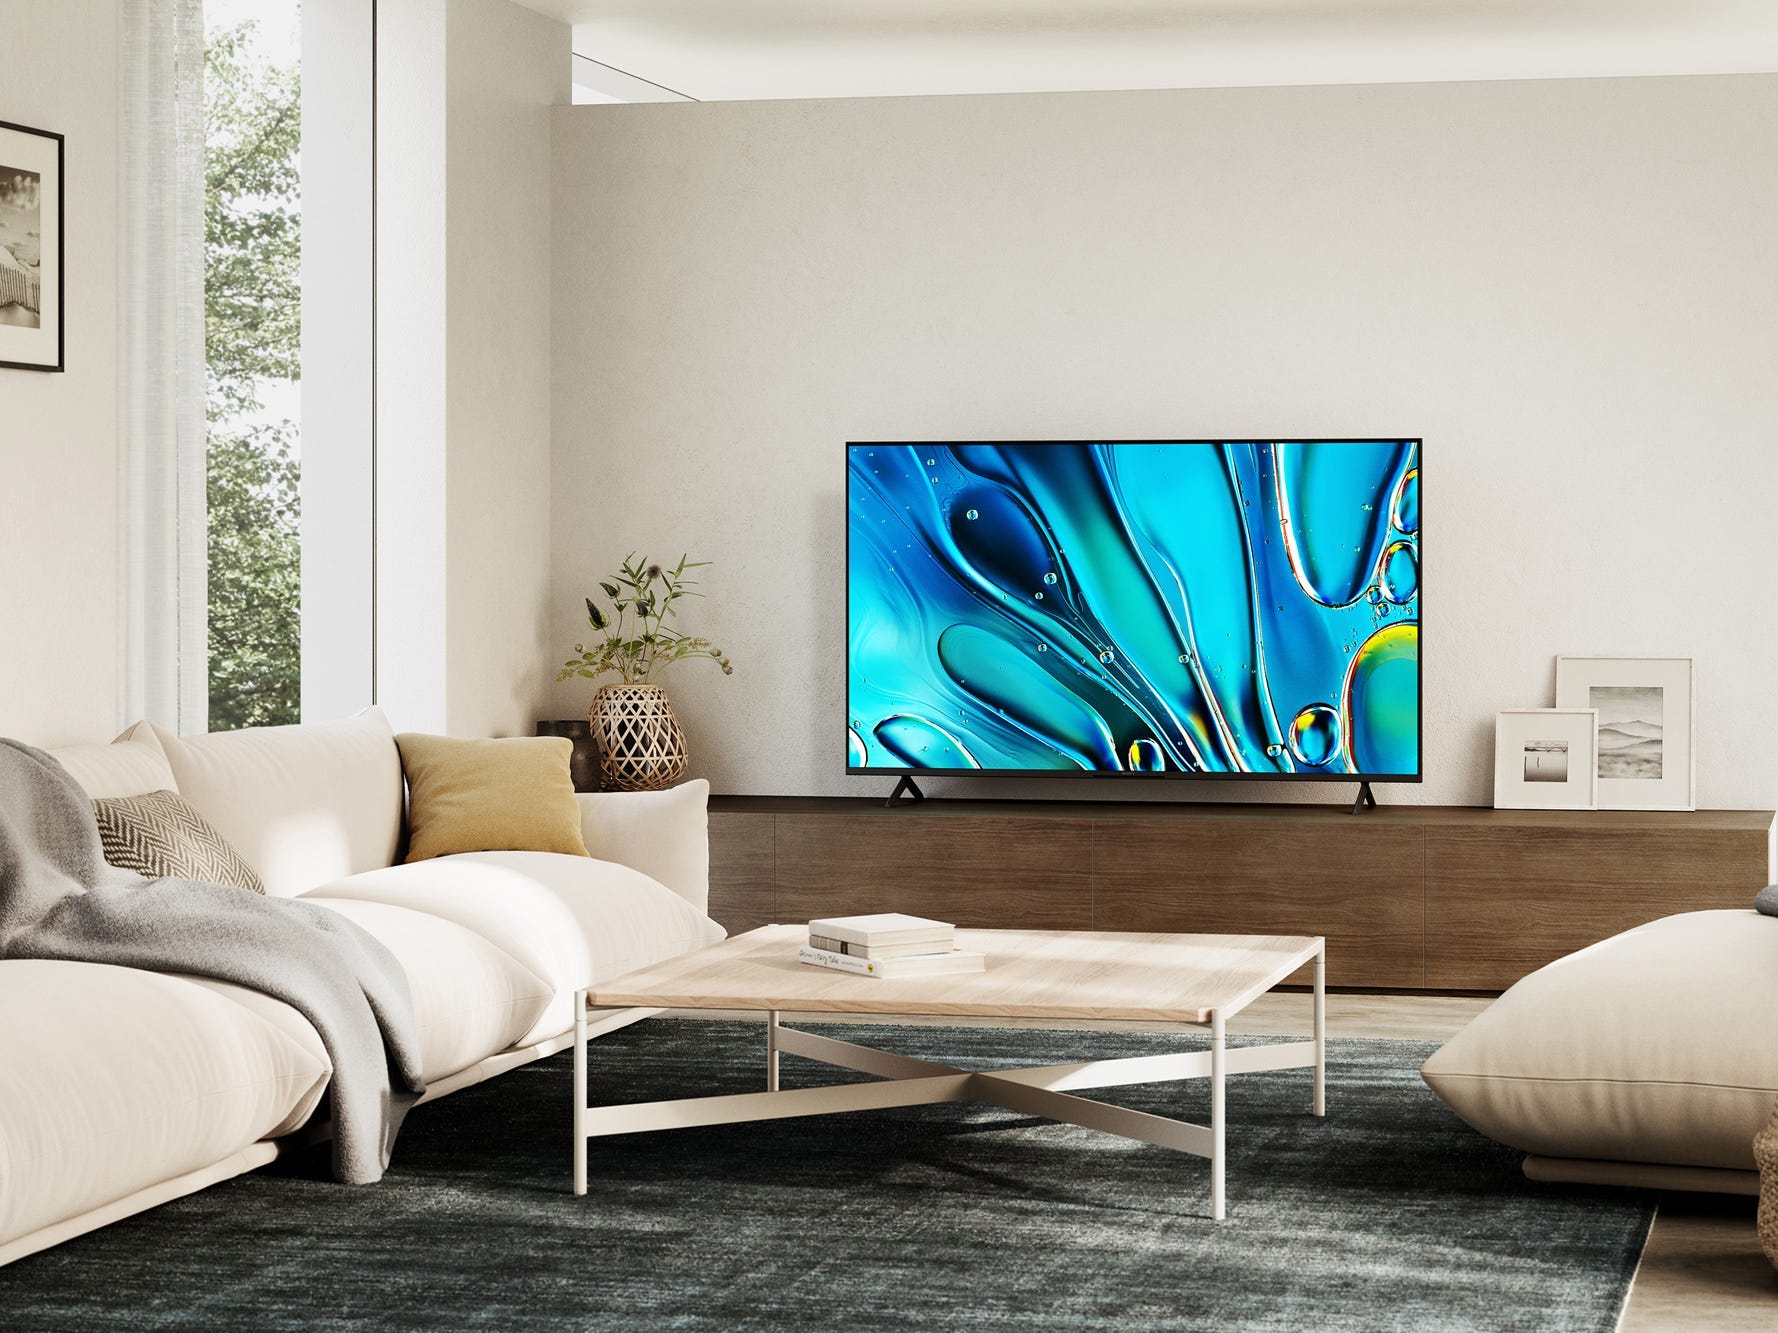 Ein Sony Bravia 3 LED-Fernseher auf einem TV-Ständer im Wohnzimmer.